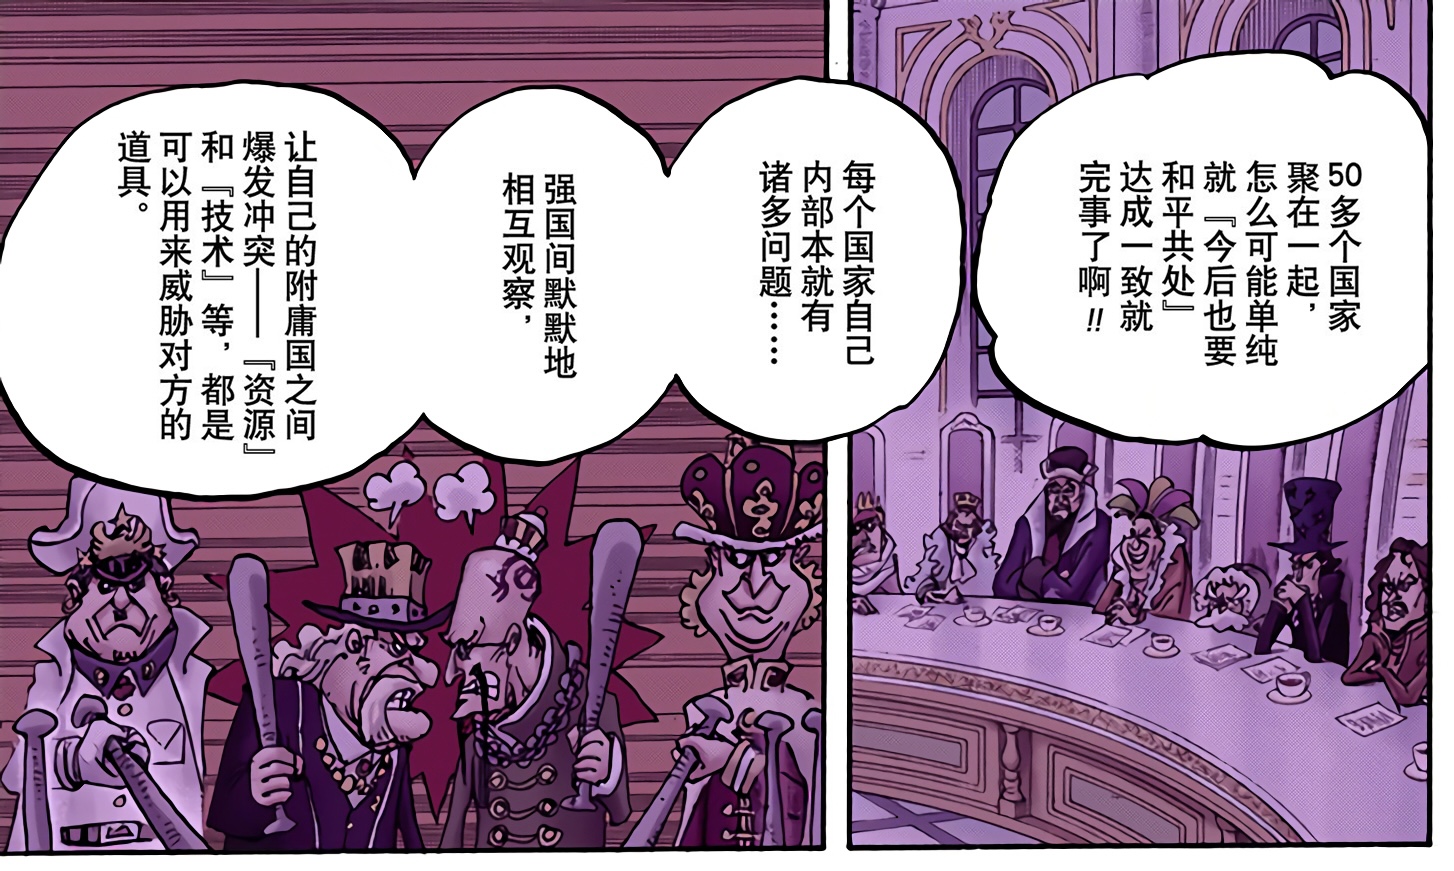 漫画956话拉面王与法拉利王的争执